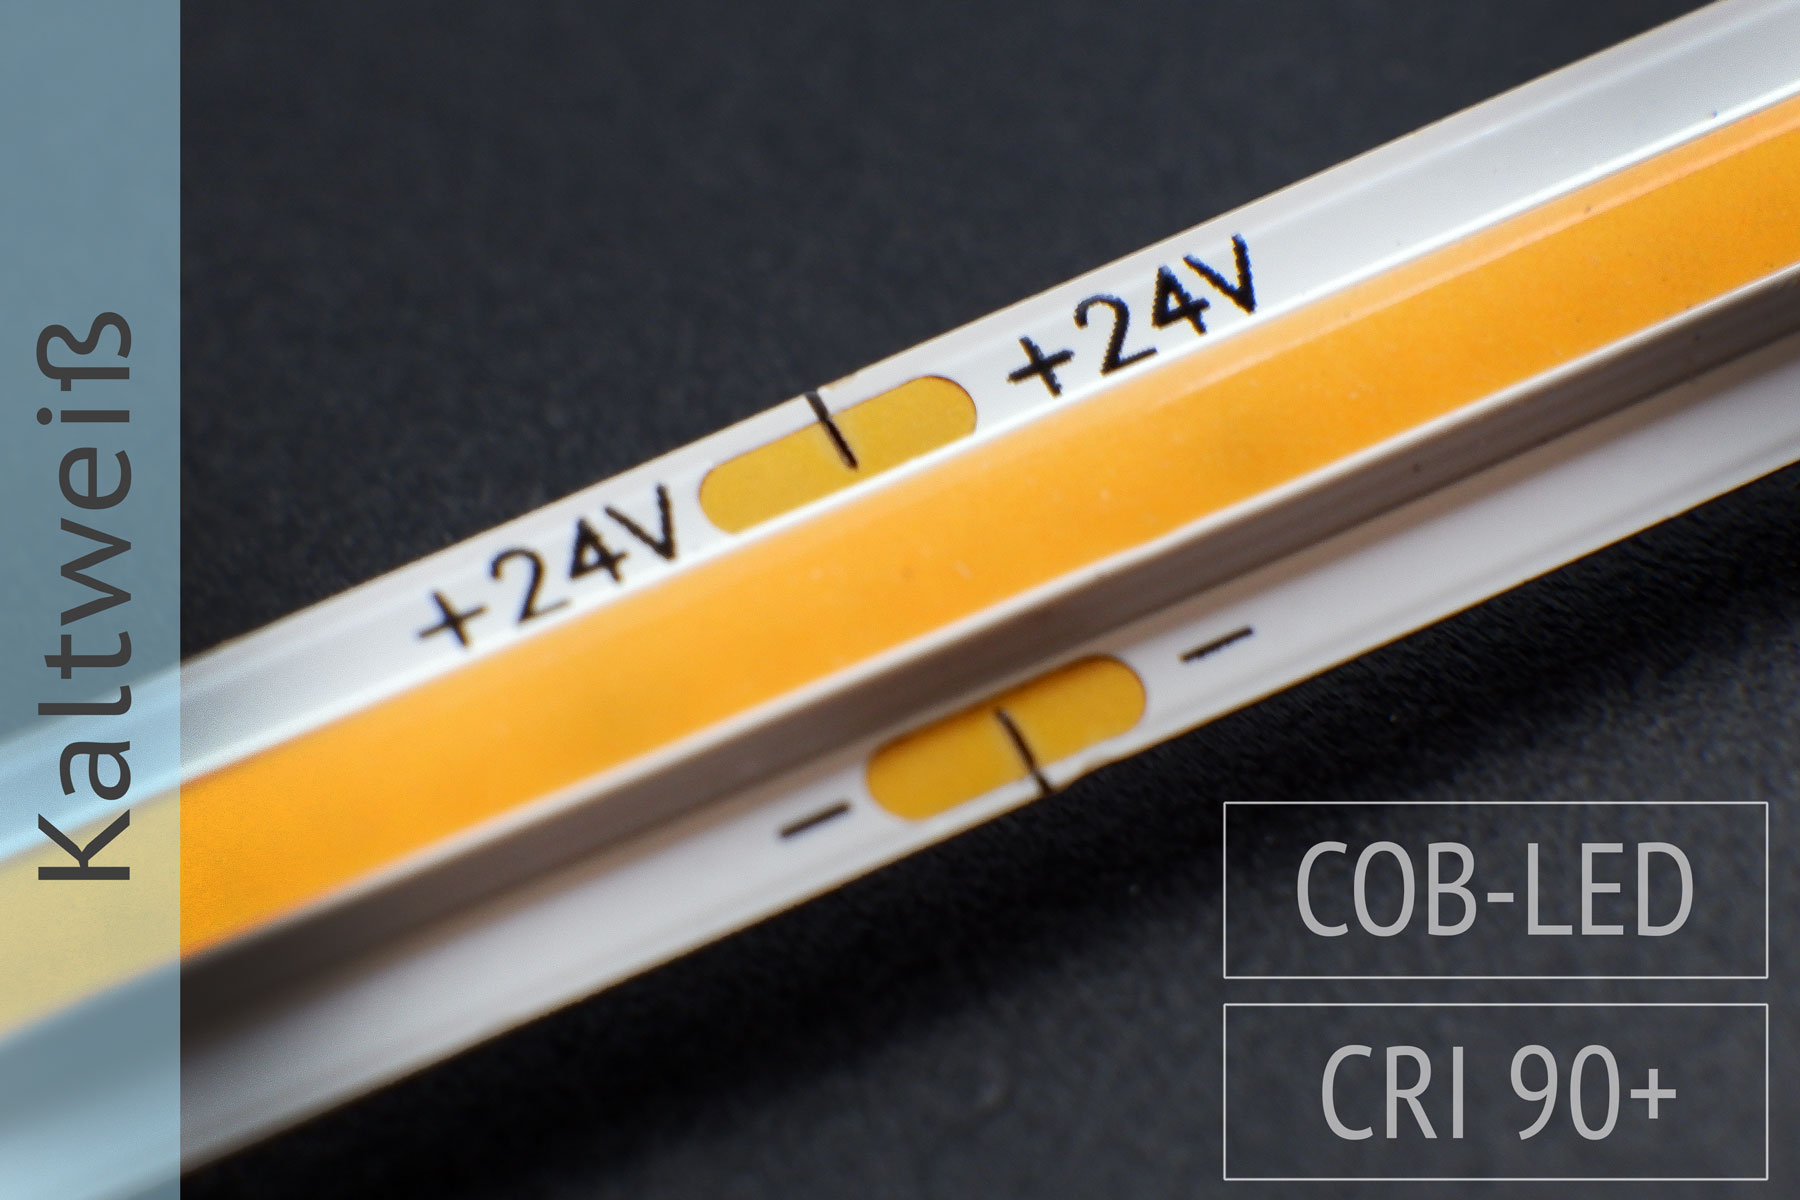 Neuheit: COB LED-Streifen - keine LEDs sichtbar - 1.400 lm/m - 6.000K kaltweiß - IP20 5m-Rolle